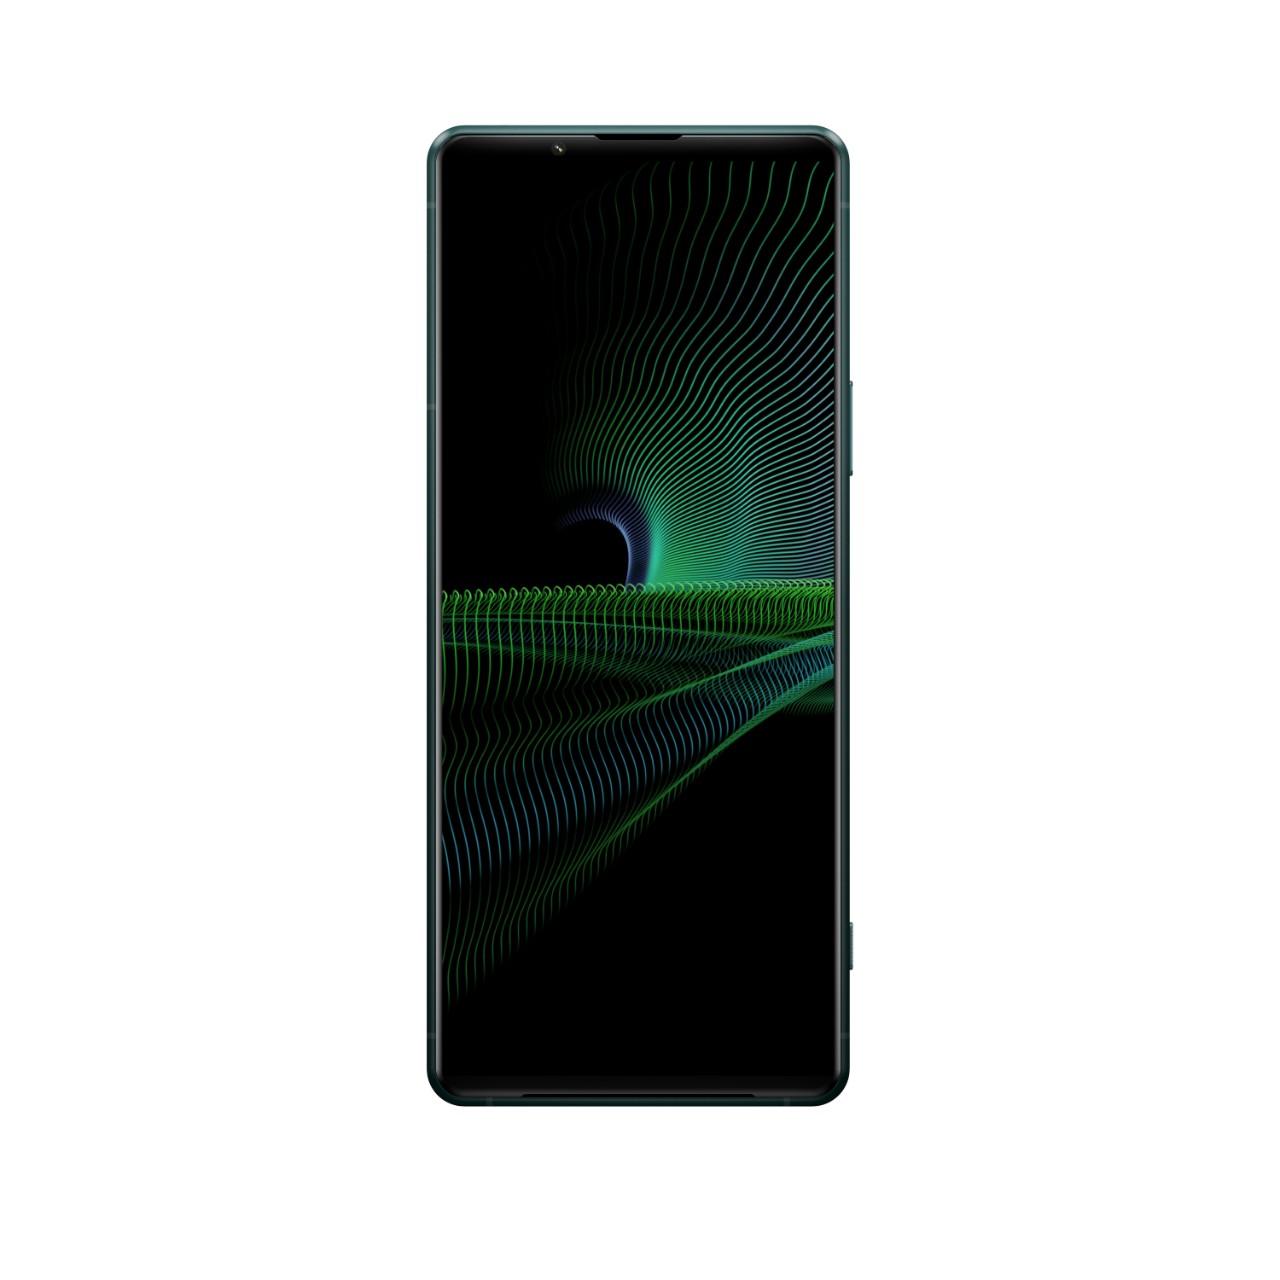 圖說五、回應市場好評 大師級手機Xperia 1 III限量推出全新「消光綠」絕美配色